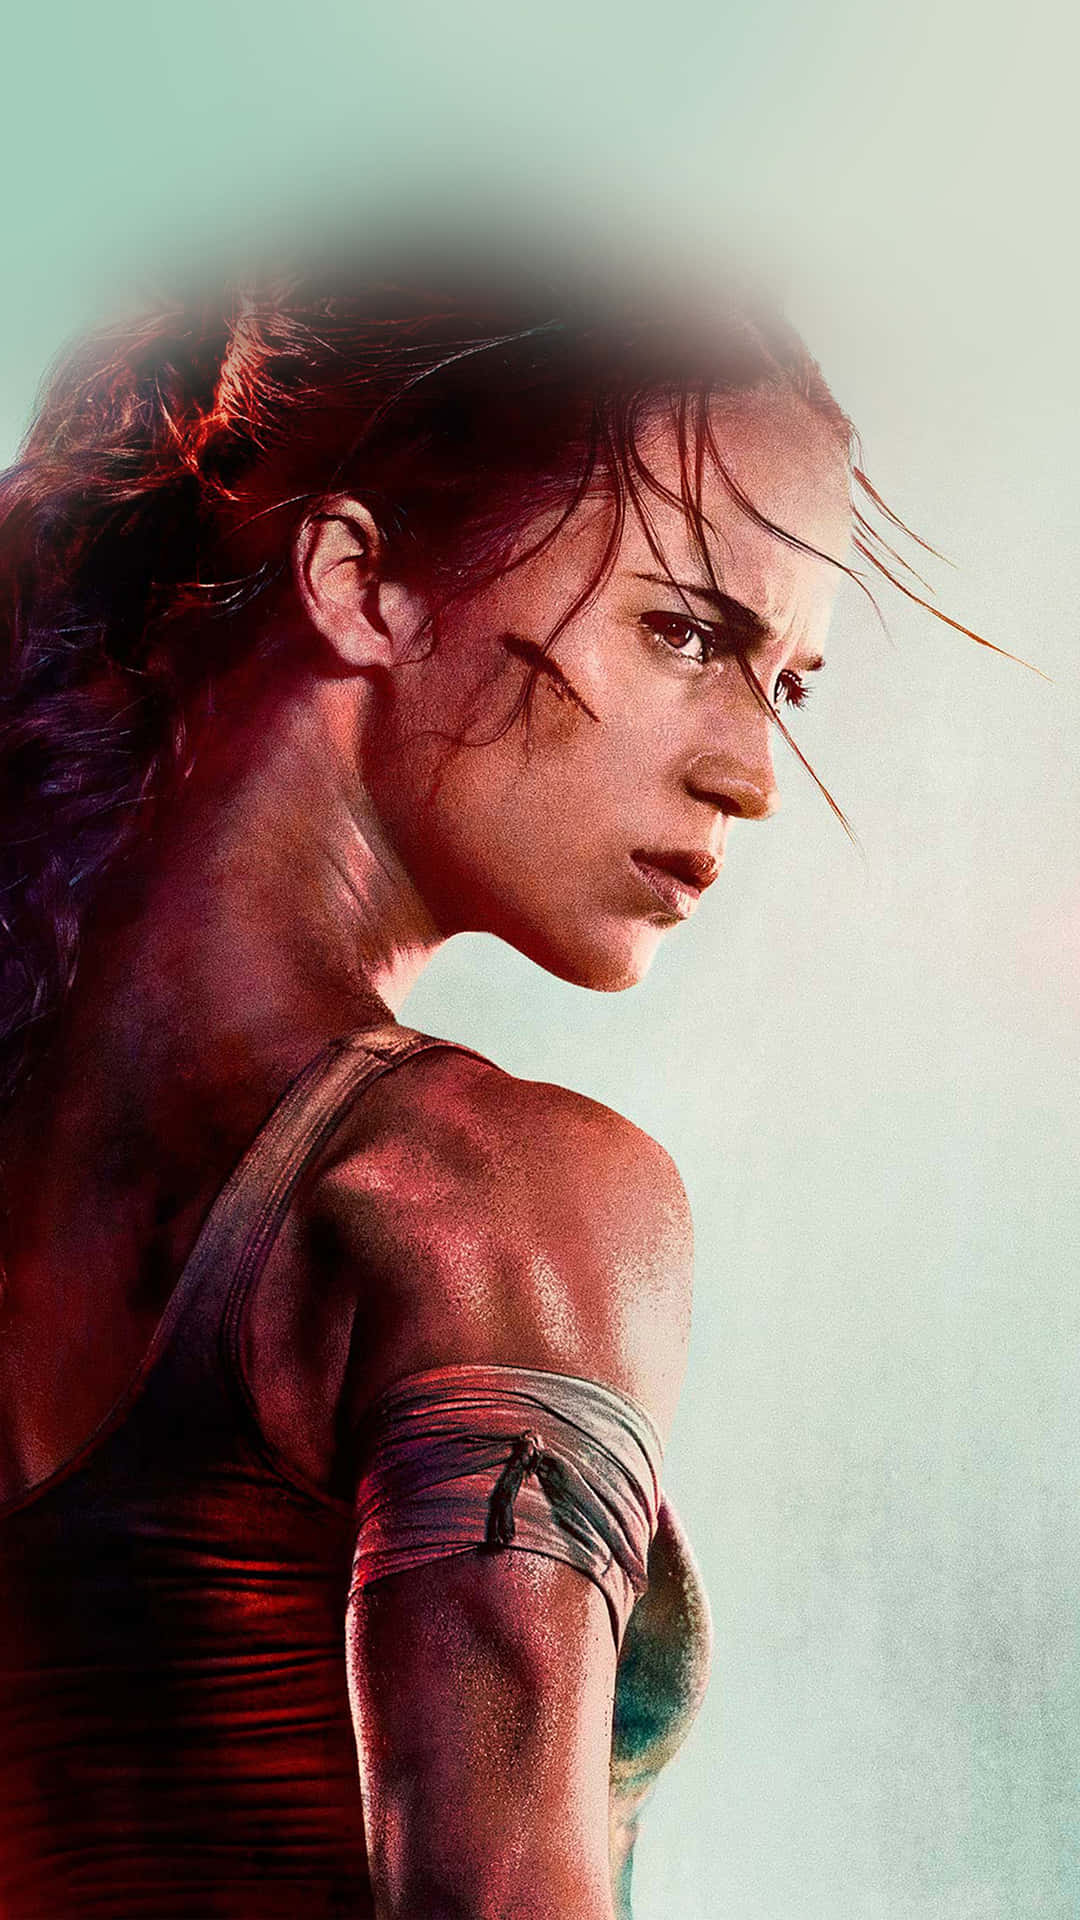 Laracroft, Der Star Von Tomb Raider, Ist Immer Bereit Für Abenteuer! Wallpaper